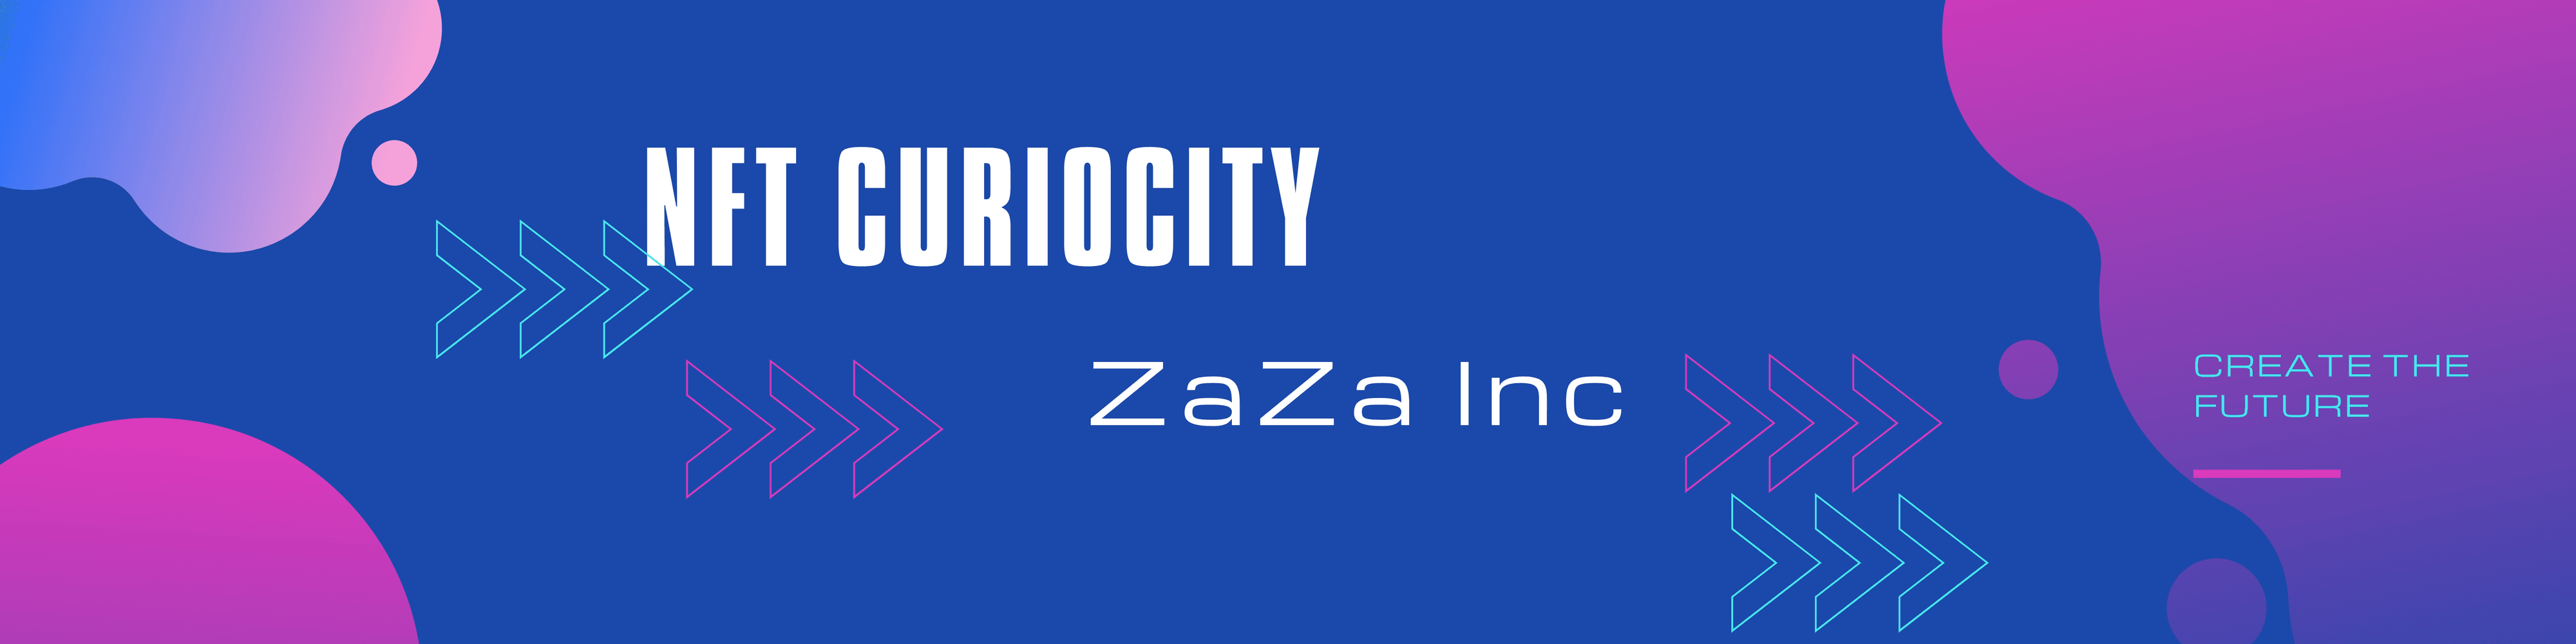 ZaZaInc banner